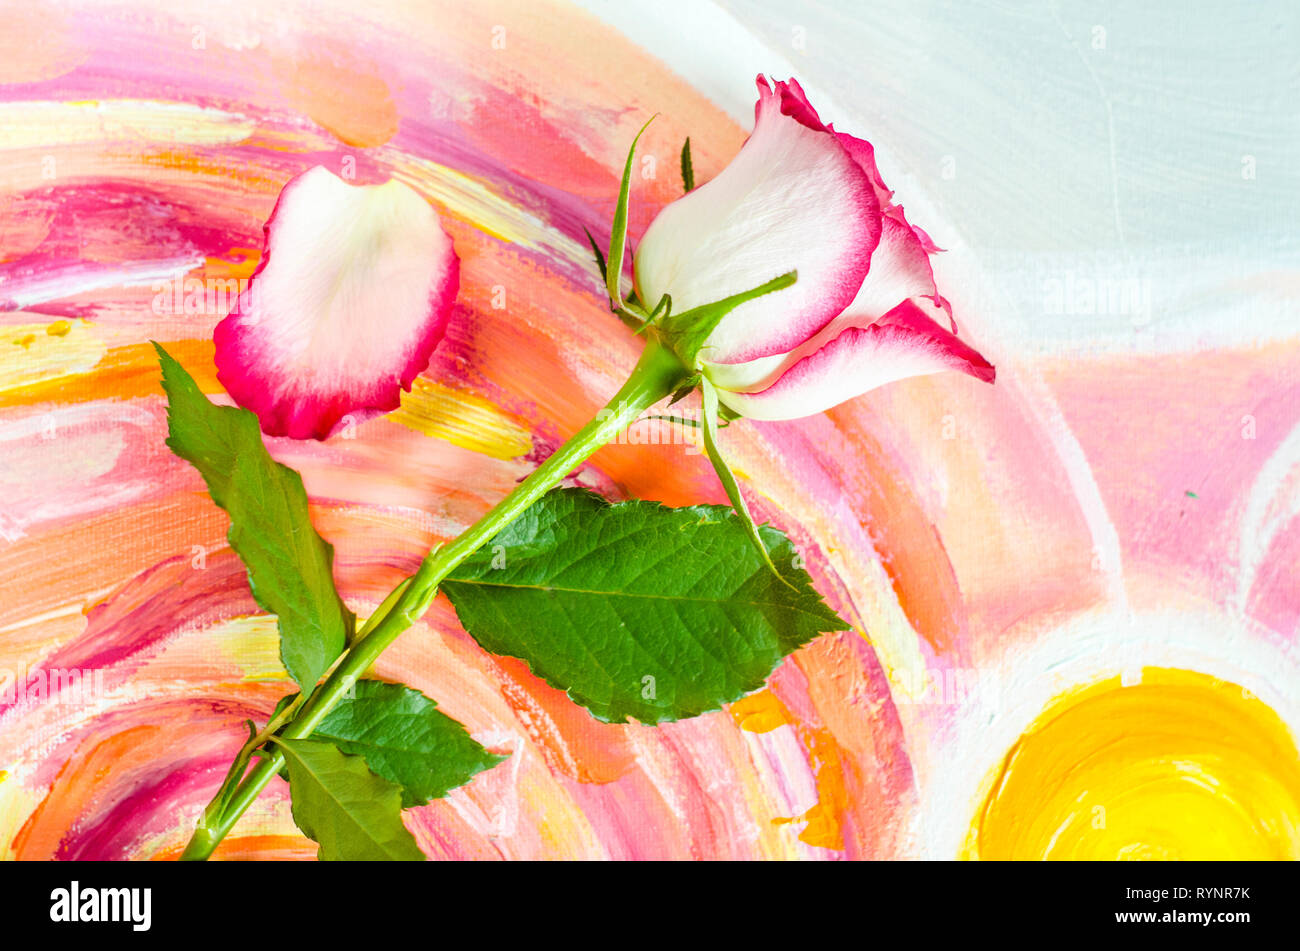 Rose auf einem malerischen Leinwand Hintergrund. Gruß und die Karte für Muttertag, Tag der Frauen. Stockfoto